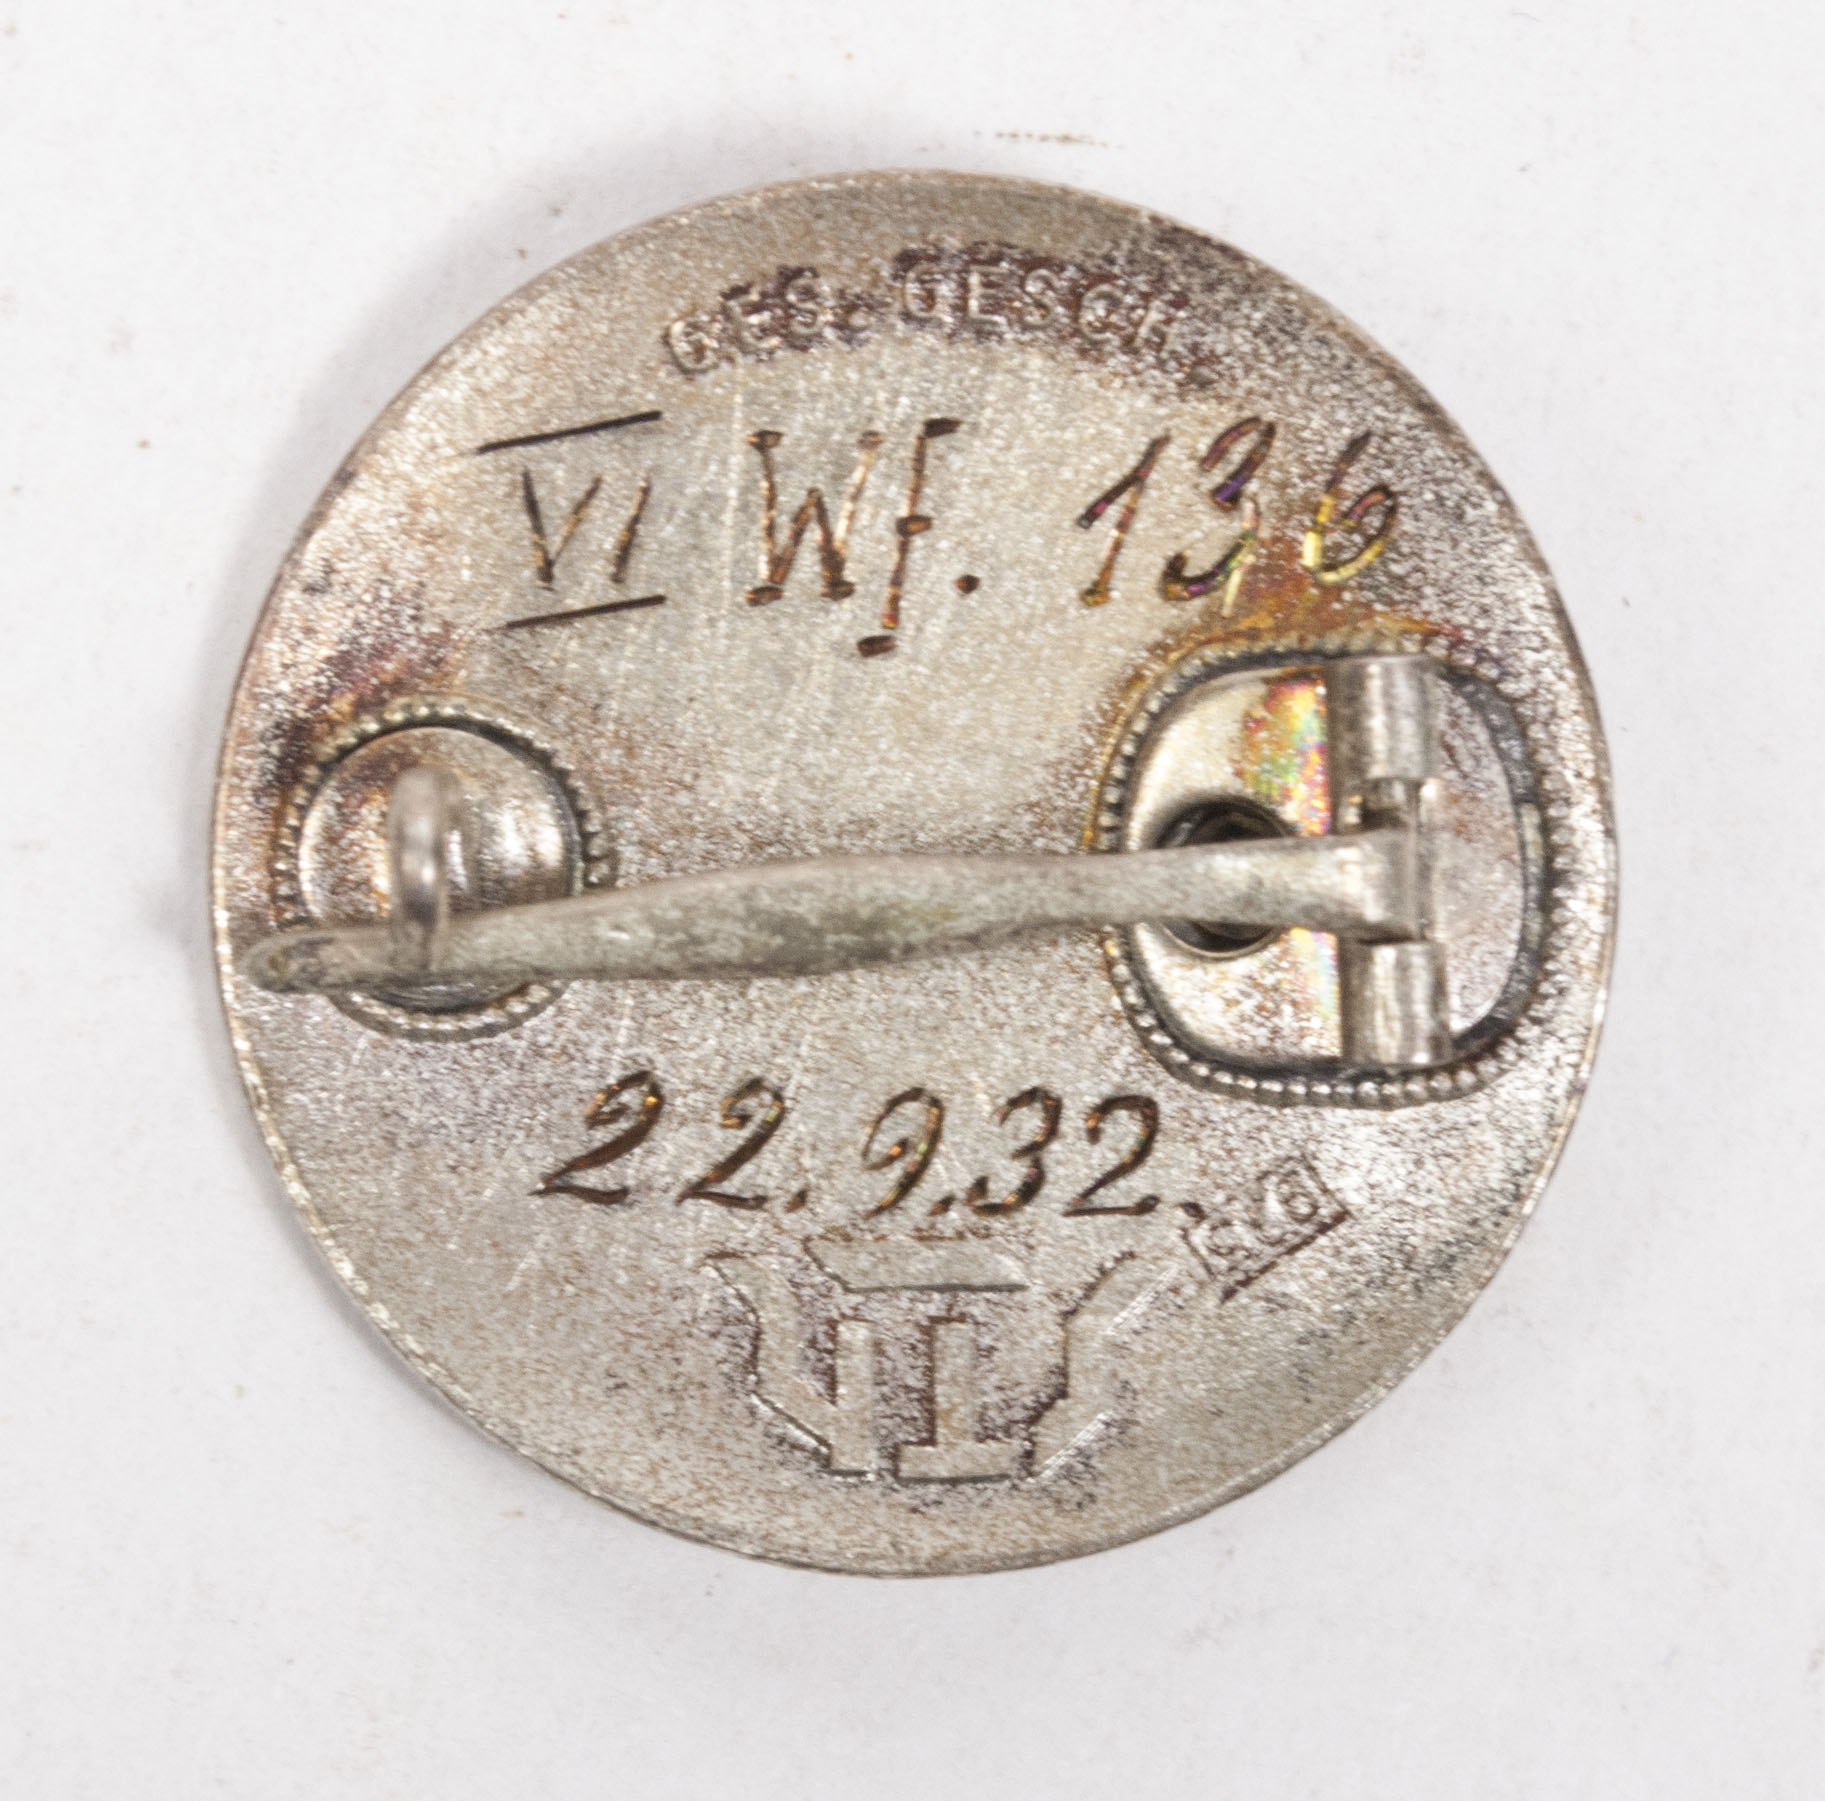 Stahlhelmbund Diensteintrittabzeichen Memberbadge 1932